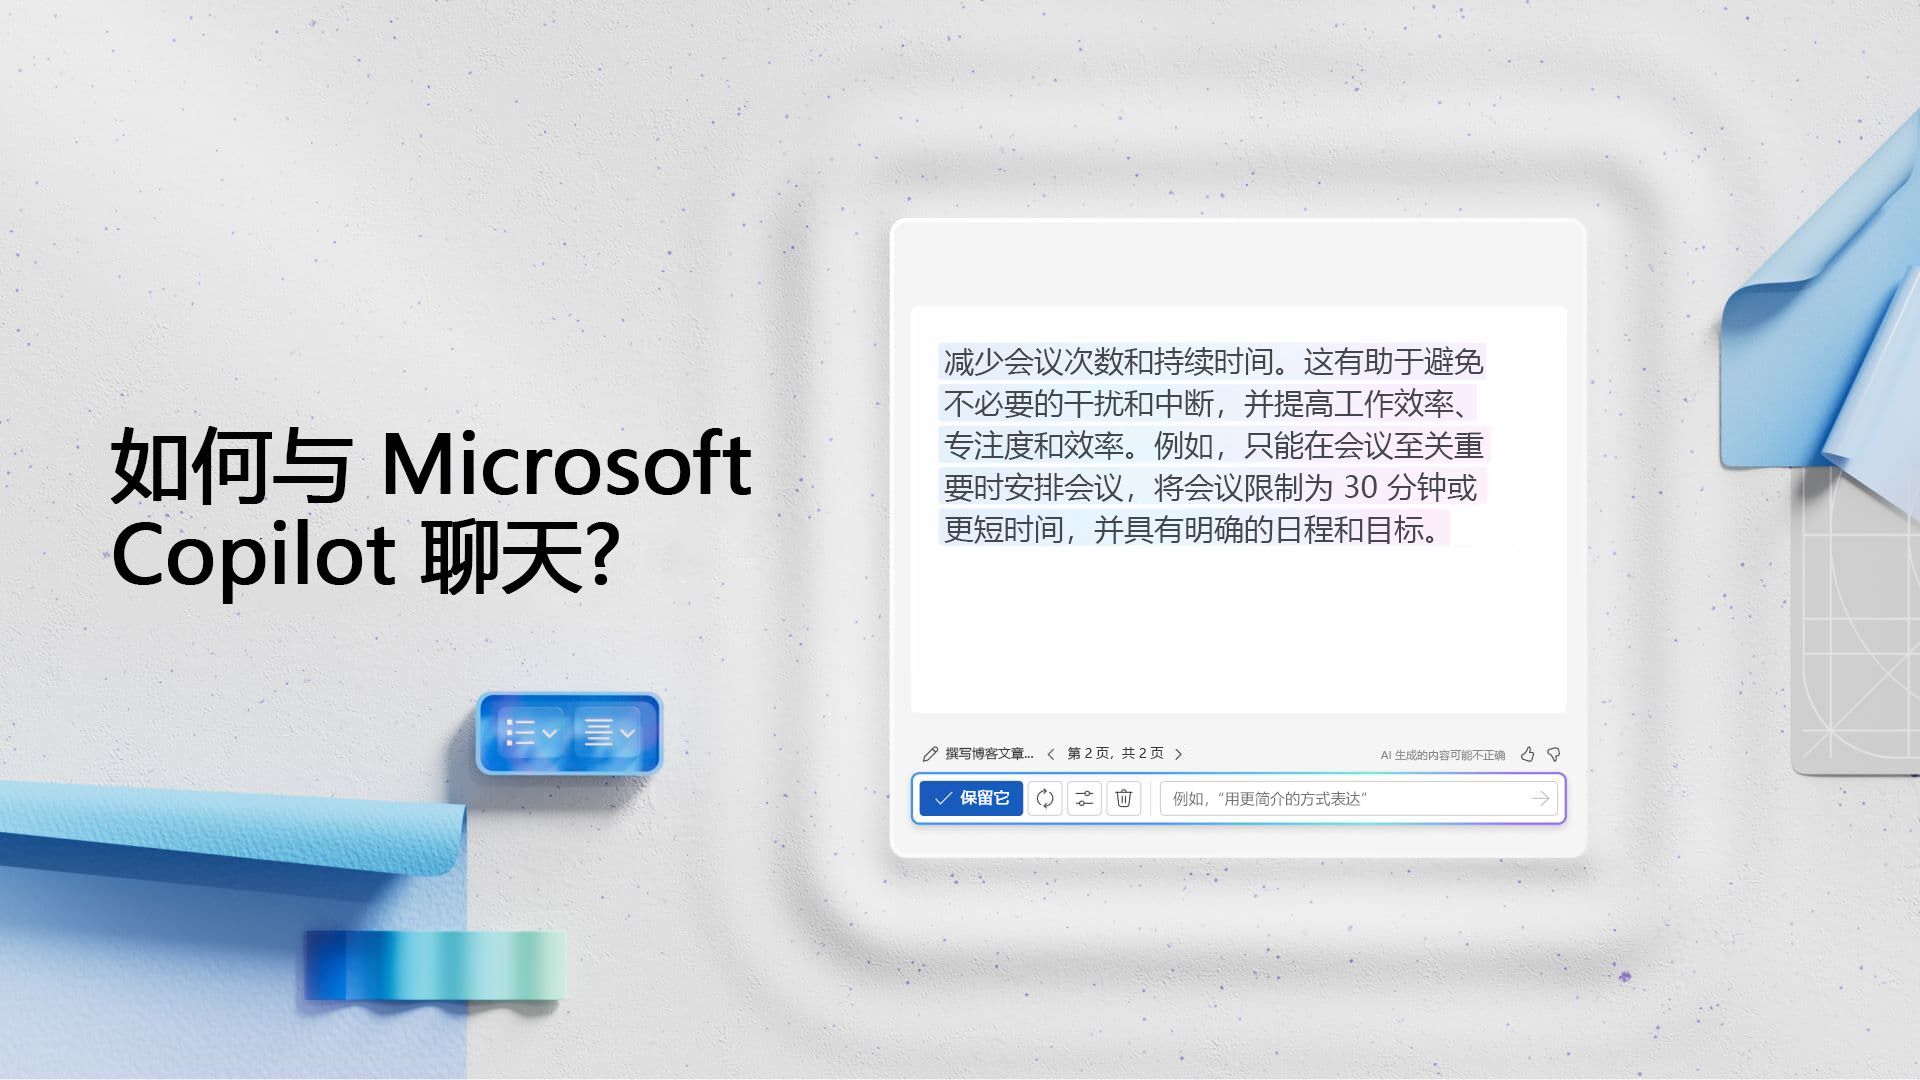 视频:如何与 Microsoft Copilot 聊天